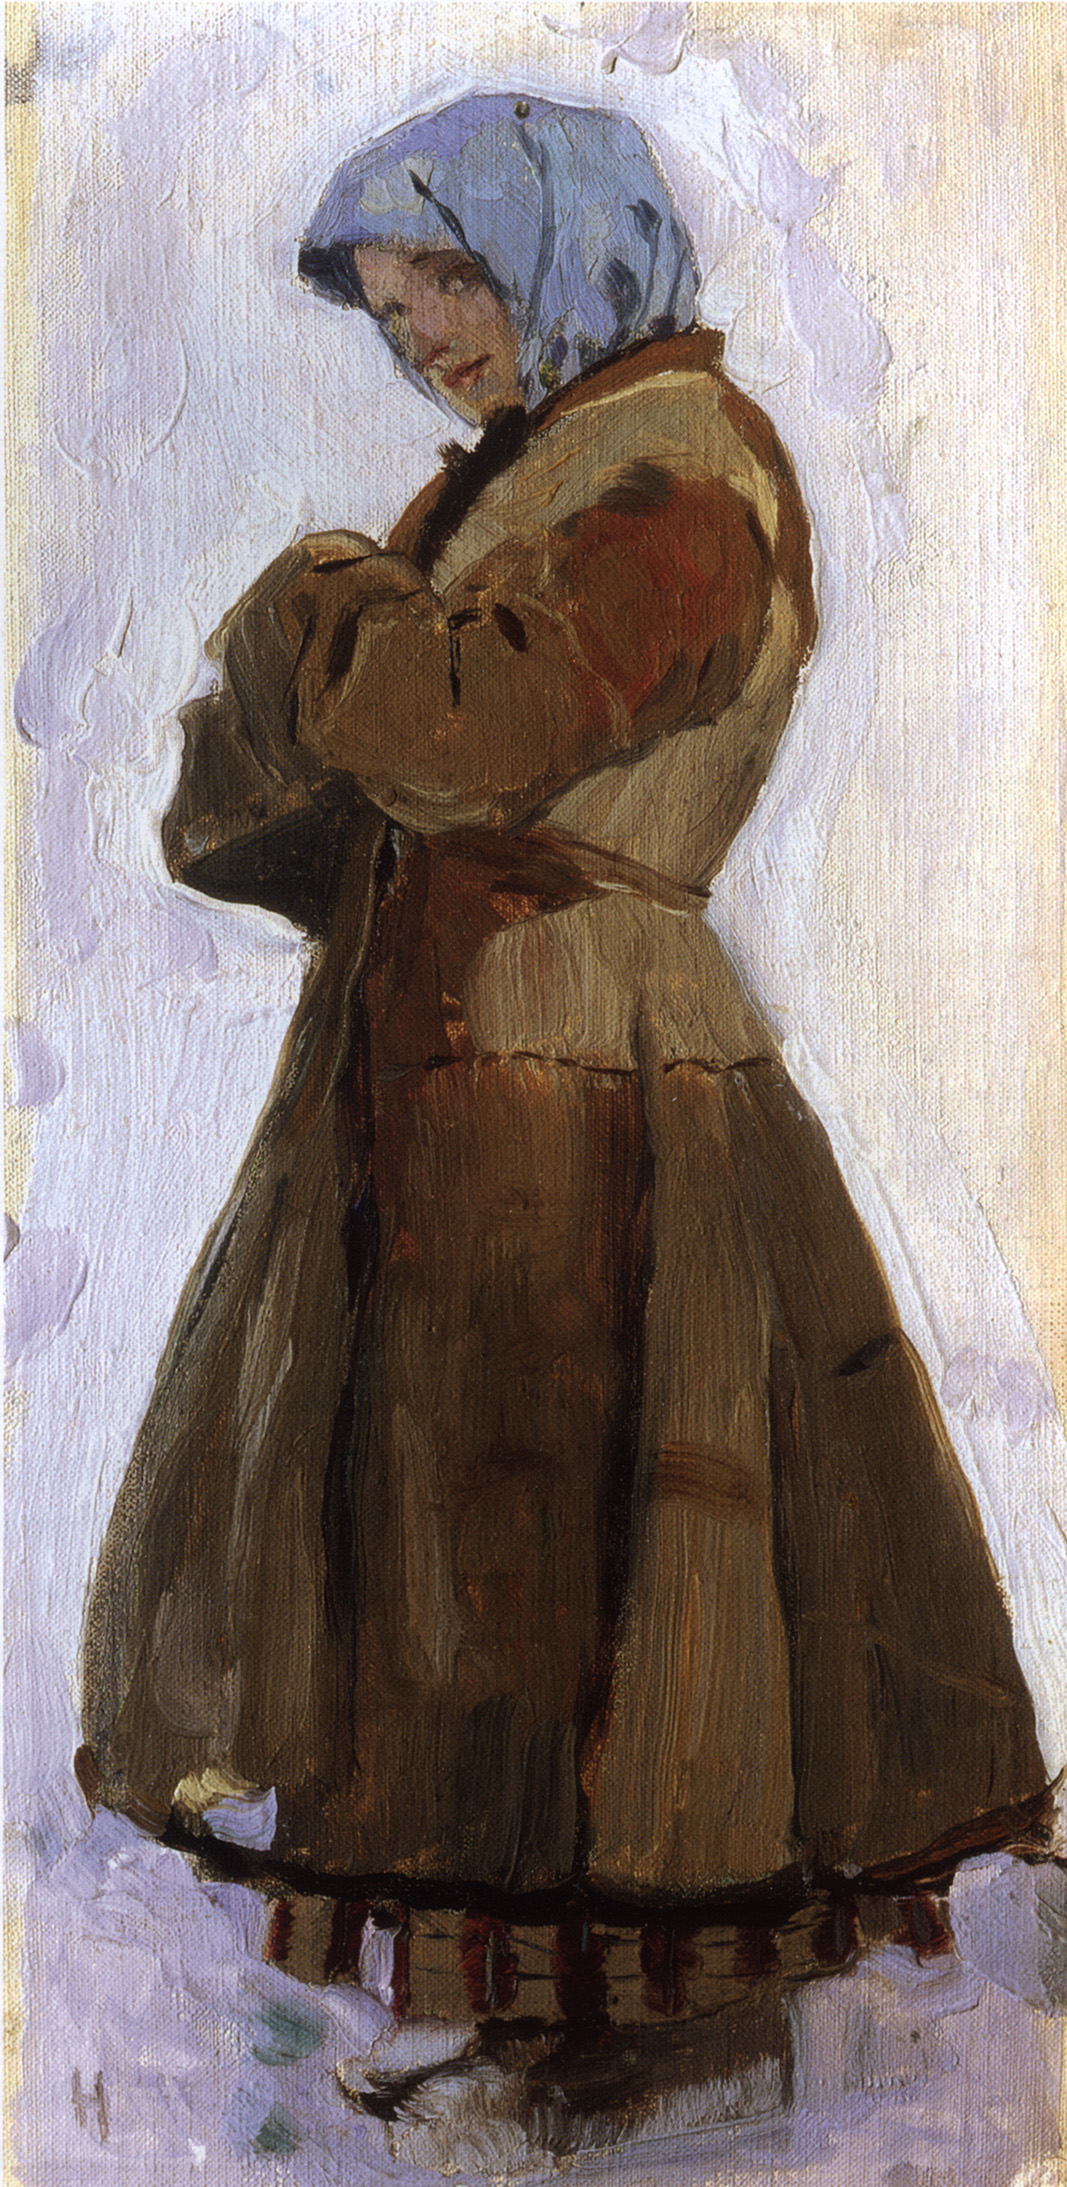 Нестеров М.. Девушка в тулупе. 1901-1905